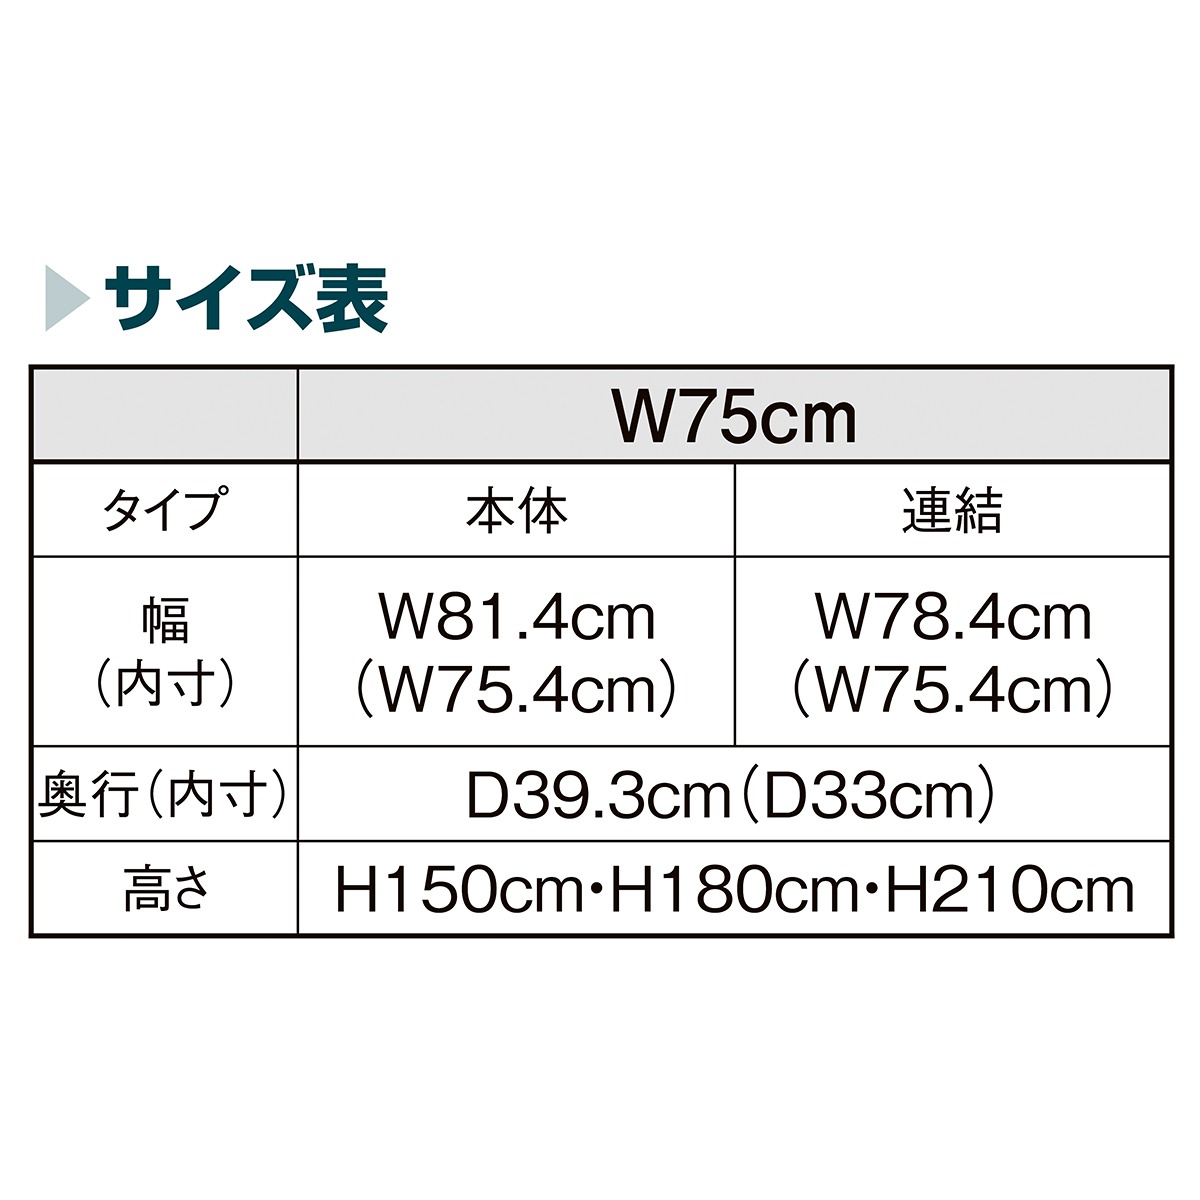 新素材新作 TR ネットタイプ W75cm 本体 H180cm